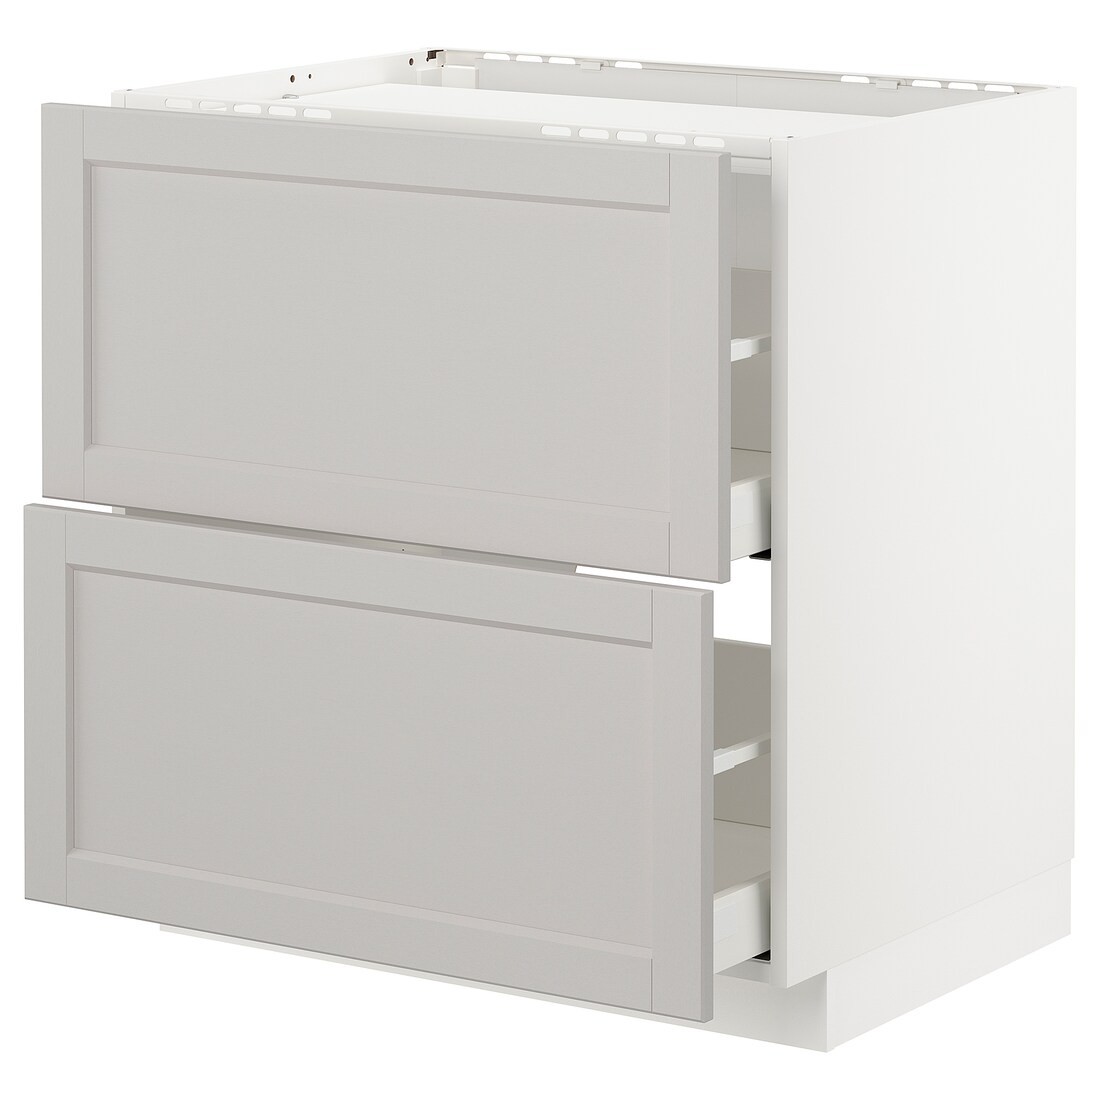 IKEA METOD МЕТОД / MAXIMERA МАКСИМЕРА Напольный шкаф с ящиками, белый / Lerhyttan светло-серый, 80x60 см 09274359 | 092.743.59